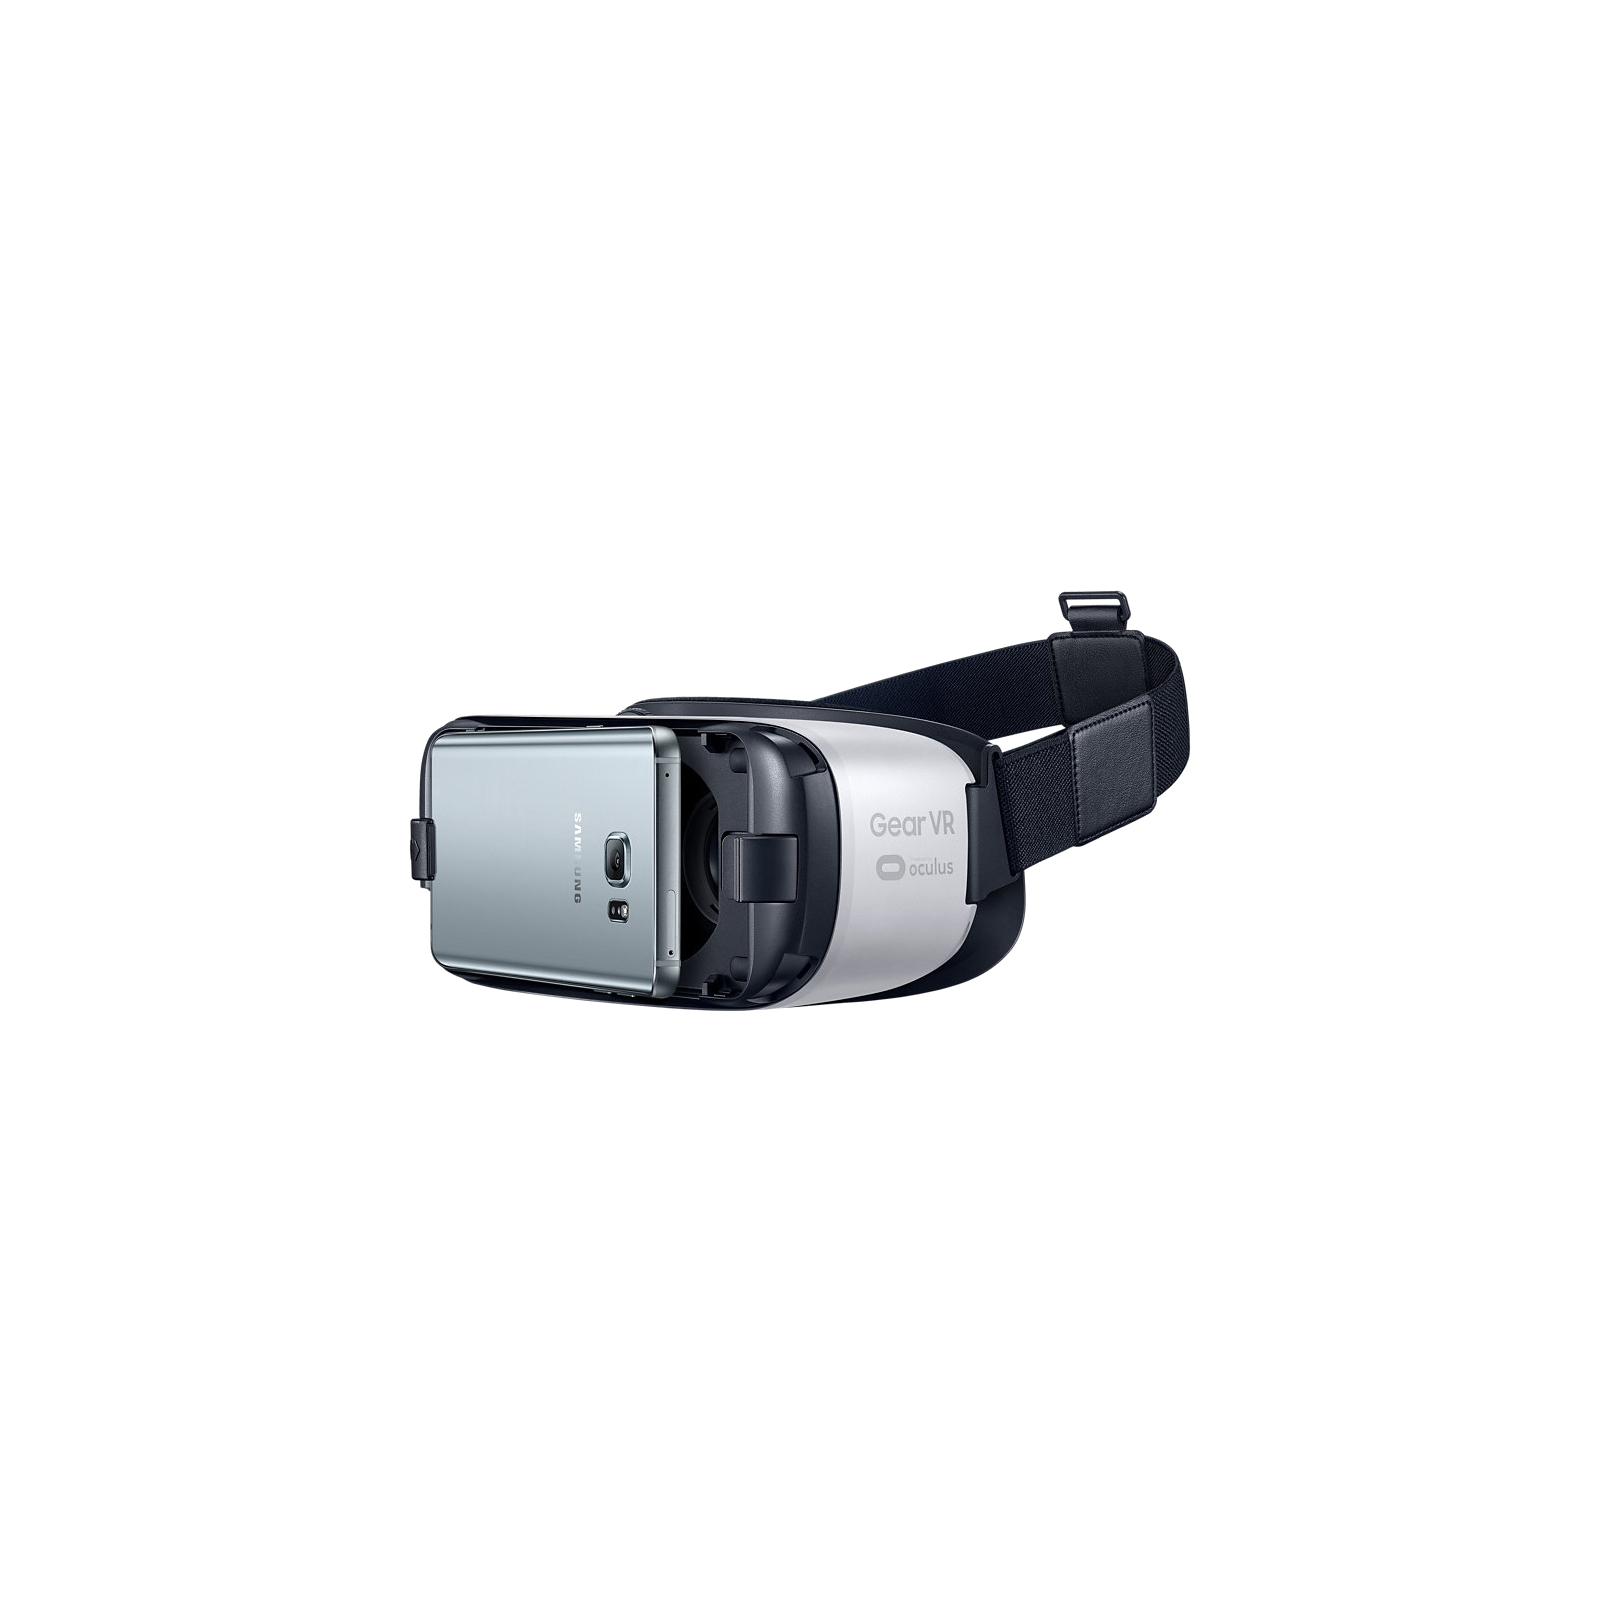 Очки виртуальной реальности Samsung VR CE (SM-R322NZWASEK) изображение 4